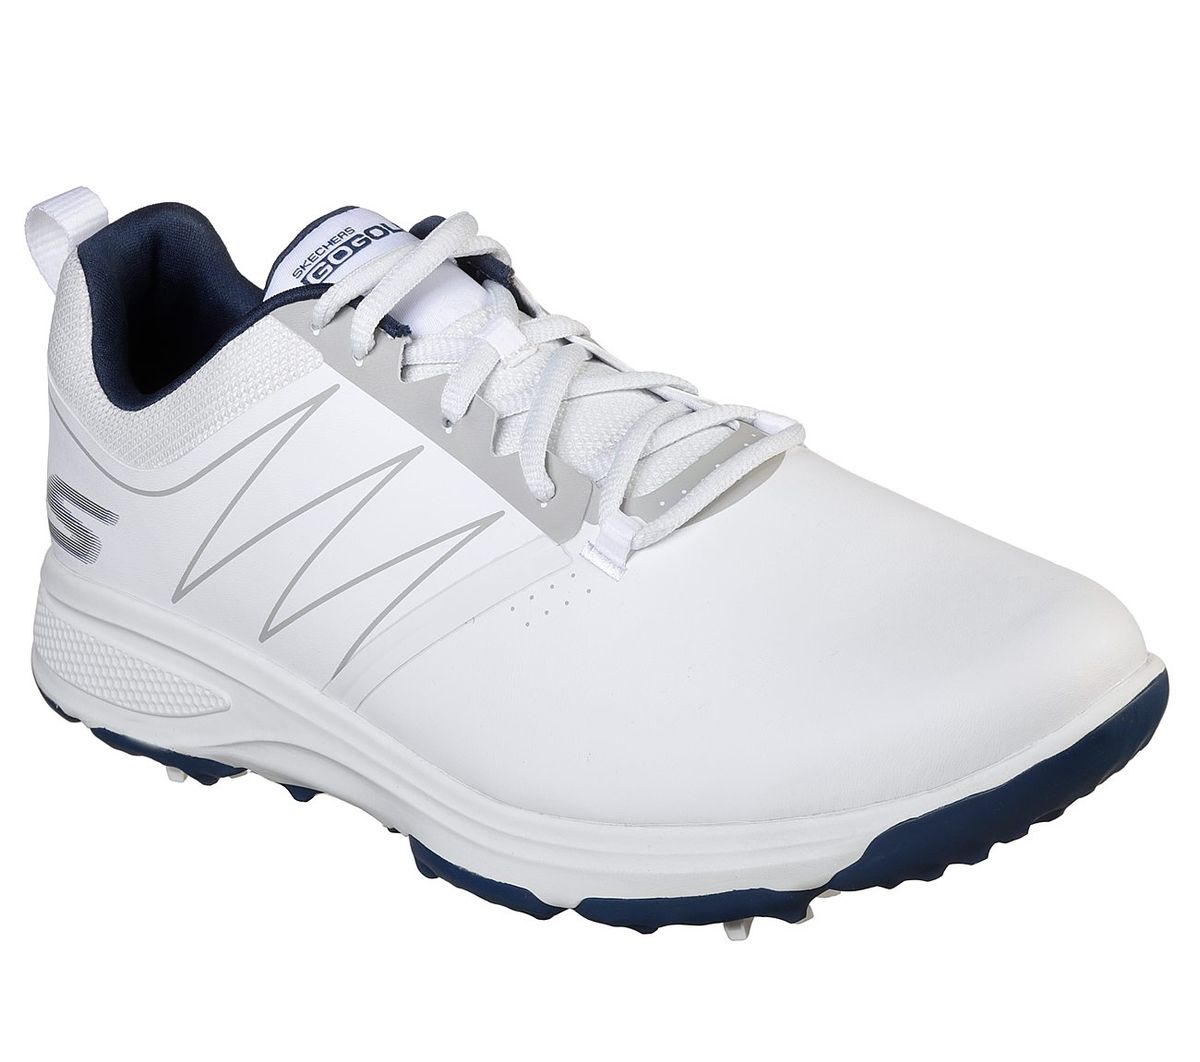 Skechers Go Golf Torque White/Navy (54541) | Shop Today. Get it ...